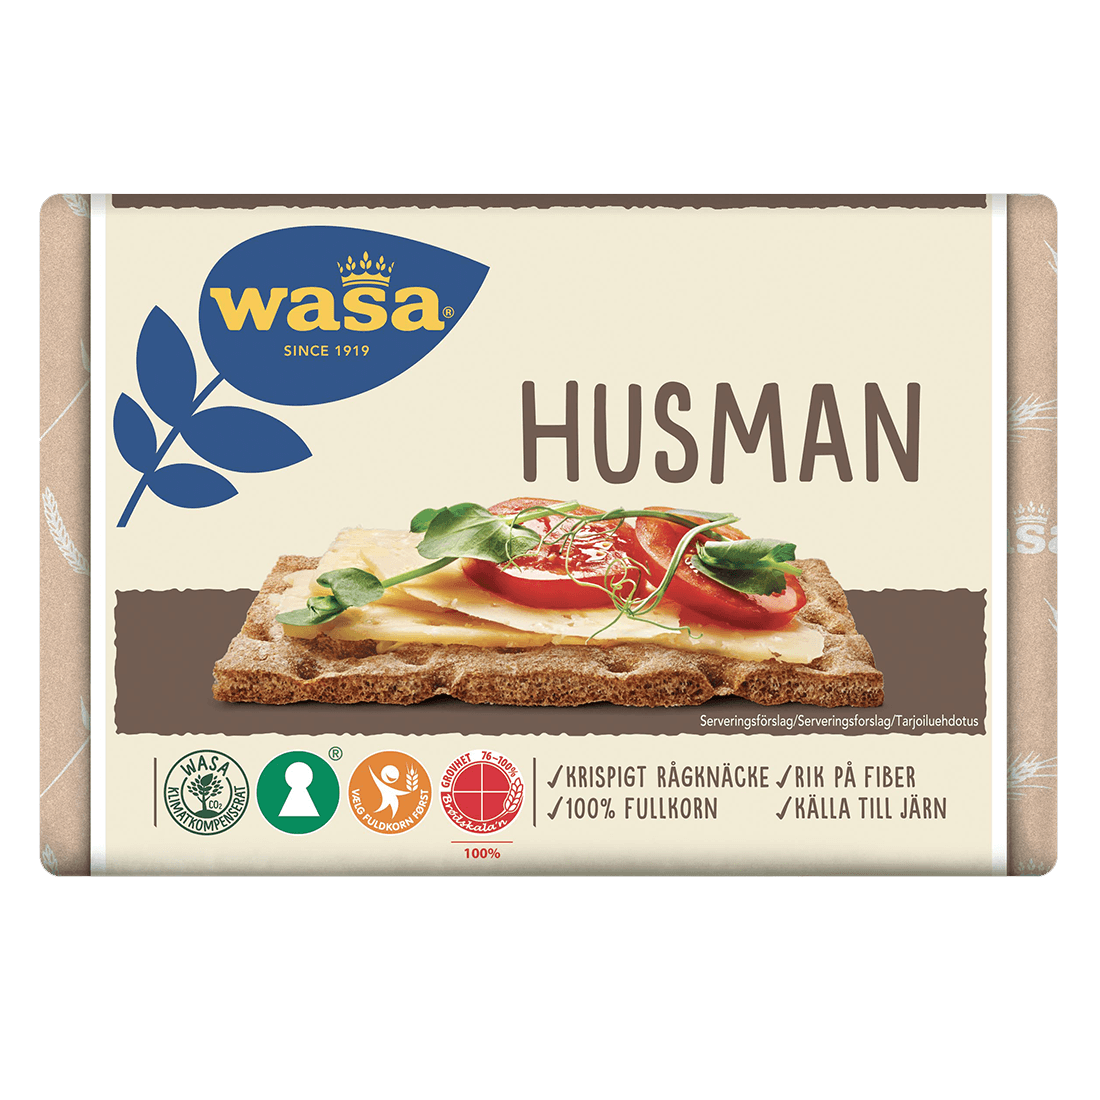 Wasa Husman - 260 grams